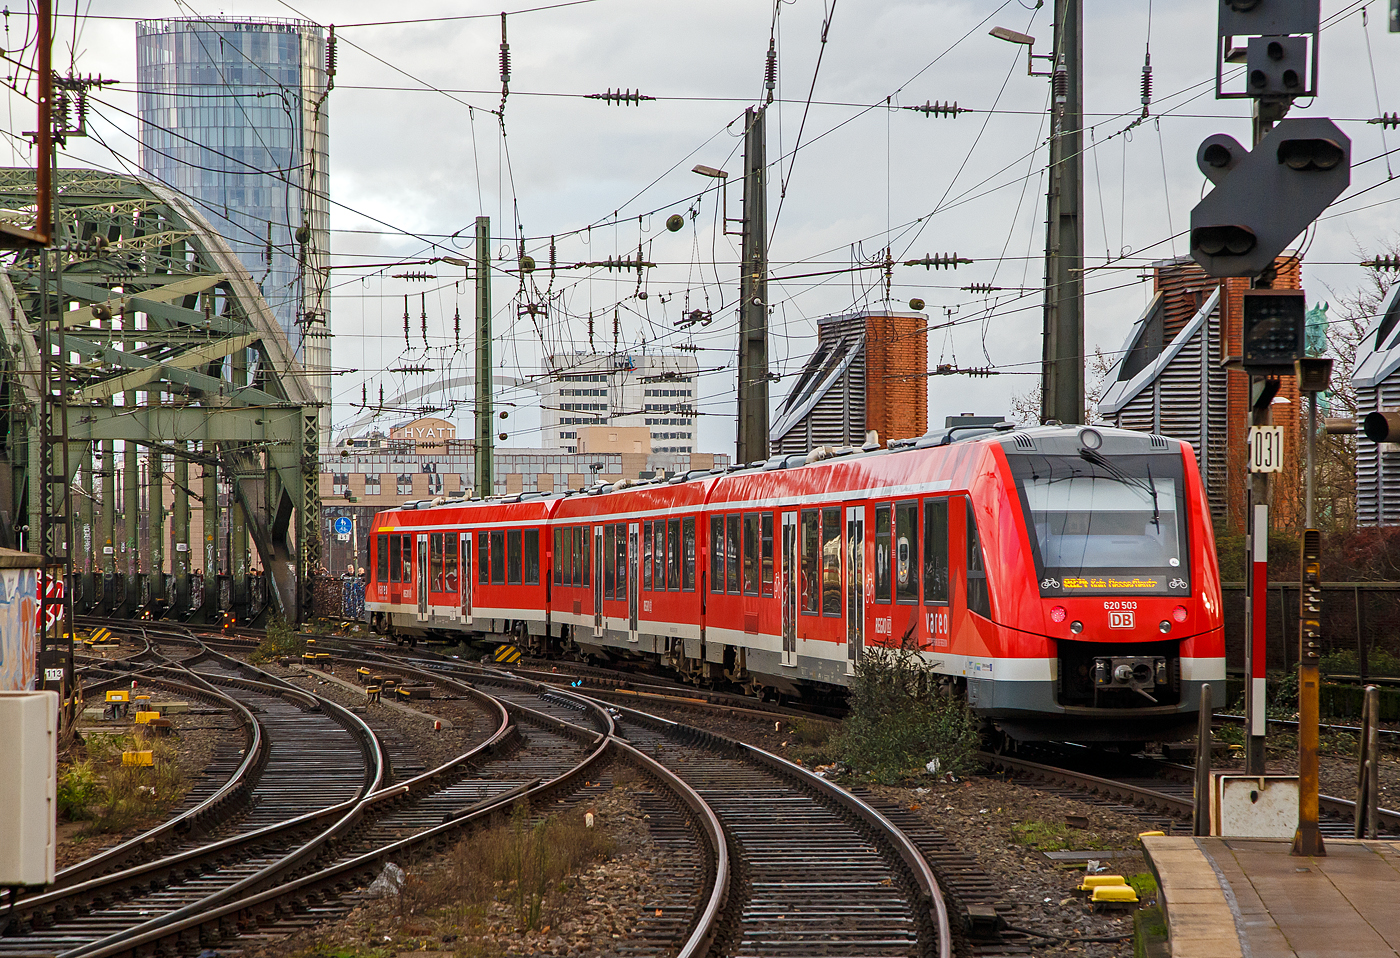 Der vareo 620 003 / 621 003 / 620 503, ein dreiteiliger Dieseltriebzug vom Typ ALSTOM Coradia LINT 81 der DB Regio NRW (VAREO), verlsst, als RB 24 „Eifel-Bahn“  (Gerolstein – Kall - Euskirchen – Kln Hbf - Kln Messe/Deutz), am 22.12.2018 den Hbf Kln in Richtung Hohenzollernbrcke bzw. Zielbahnhof Kln Messe/Deutz.